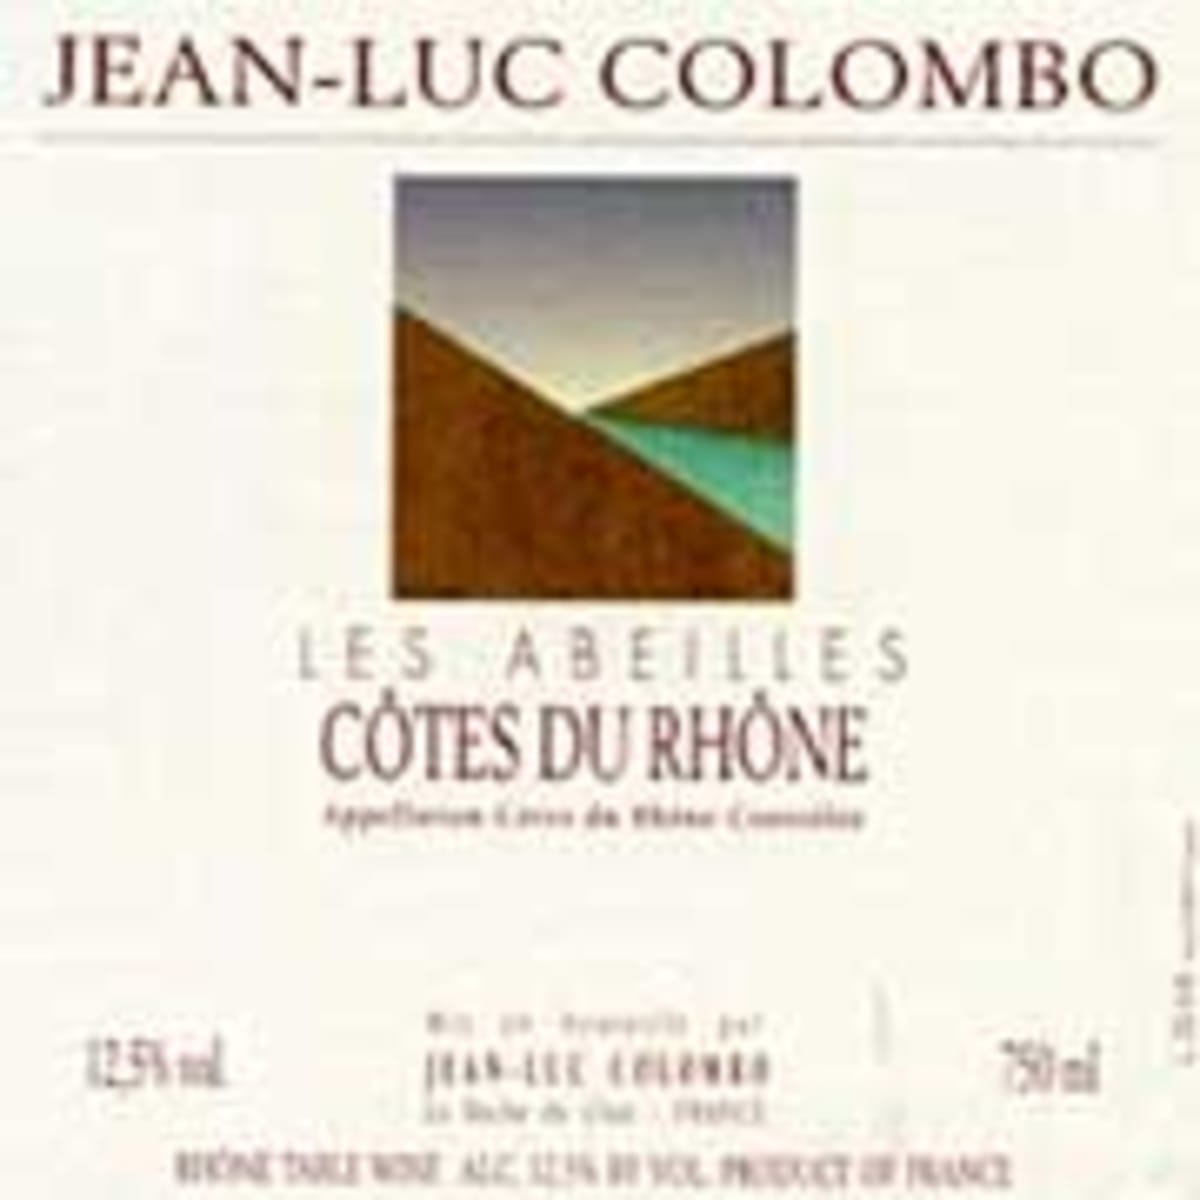 Jean-Luc Colombo Cotes du Rhone Les Abeilles 2000 Front Label